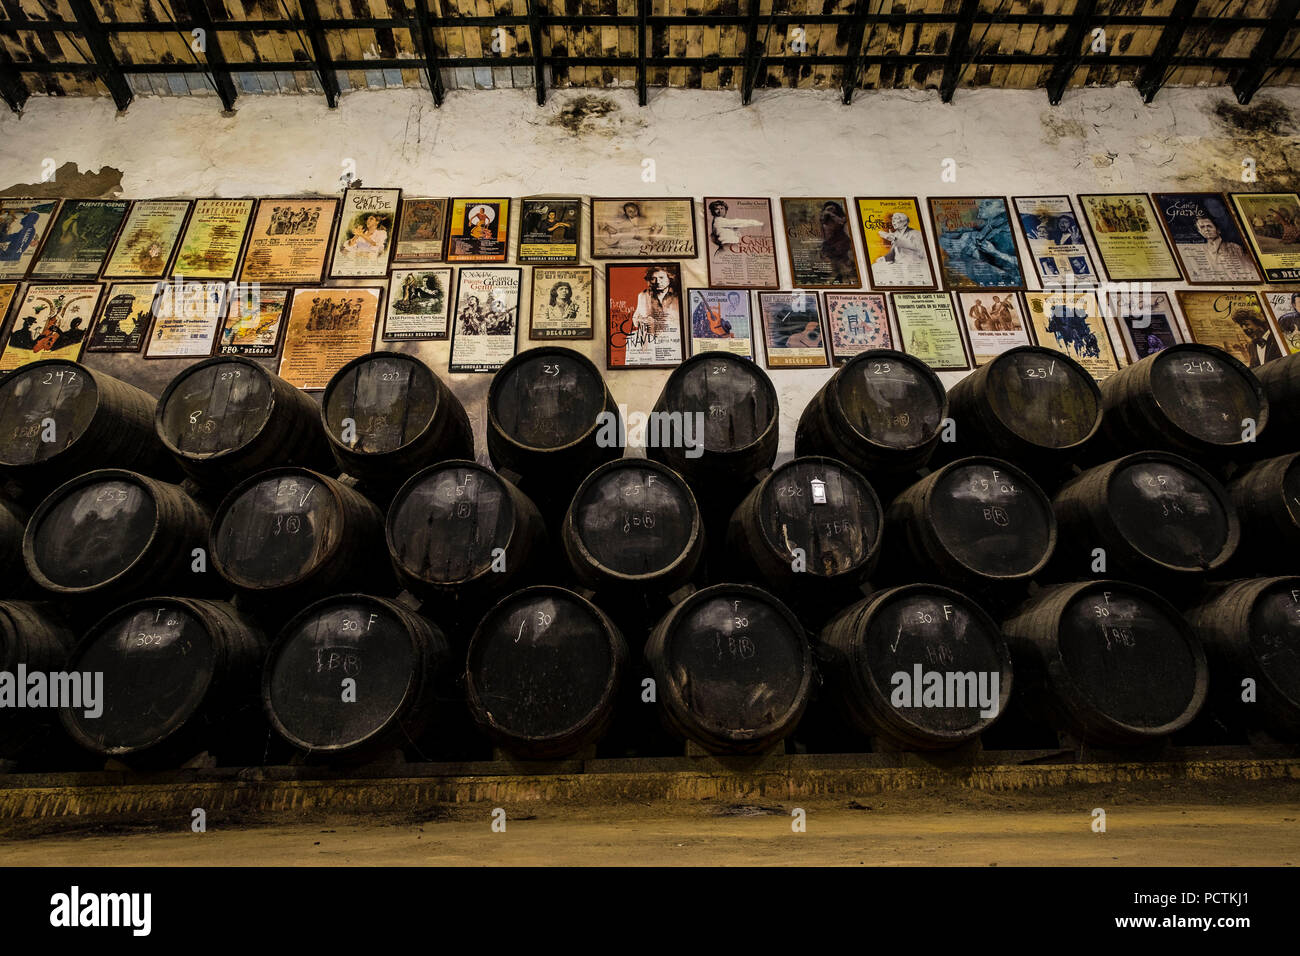 La Delgado cantine hanno esisteva sin dal 1874 nella città andalusa di Puente Genil. Produce vini dolci, alcuni dei migliori in Spagna Foto Stock